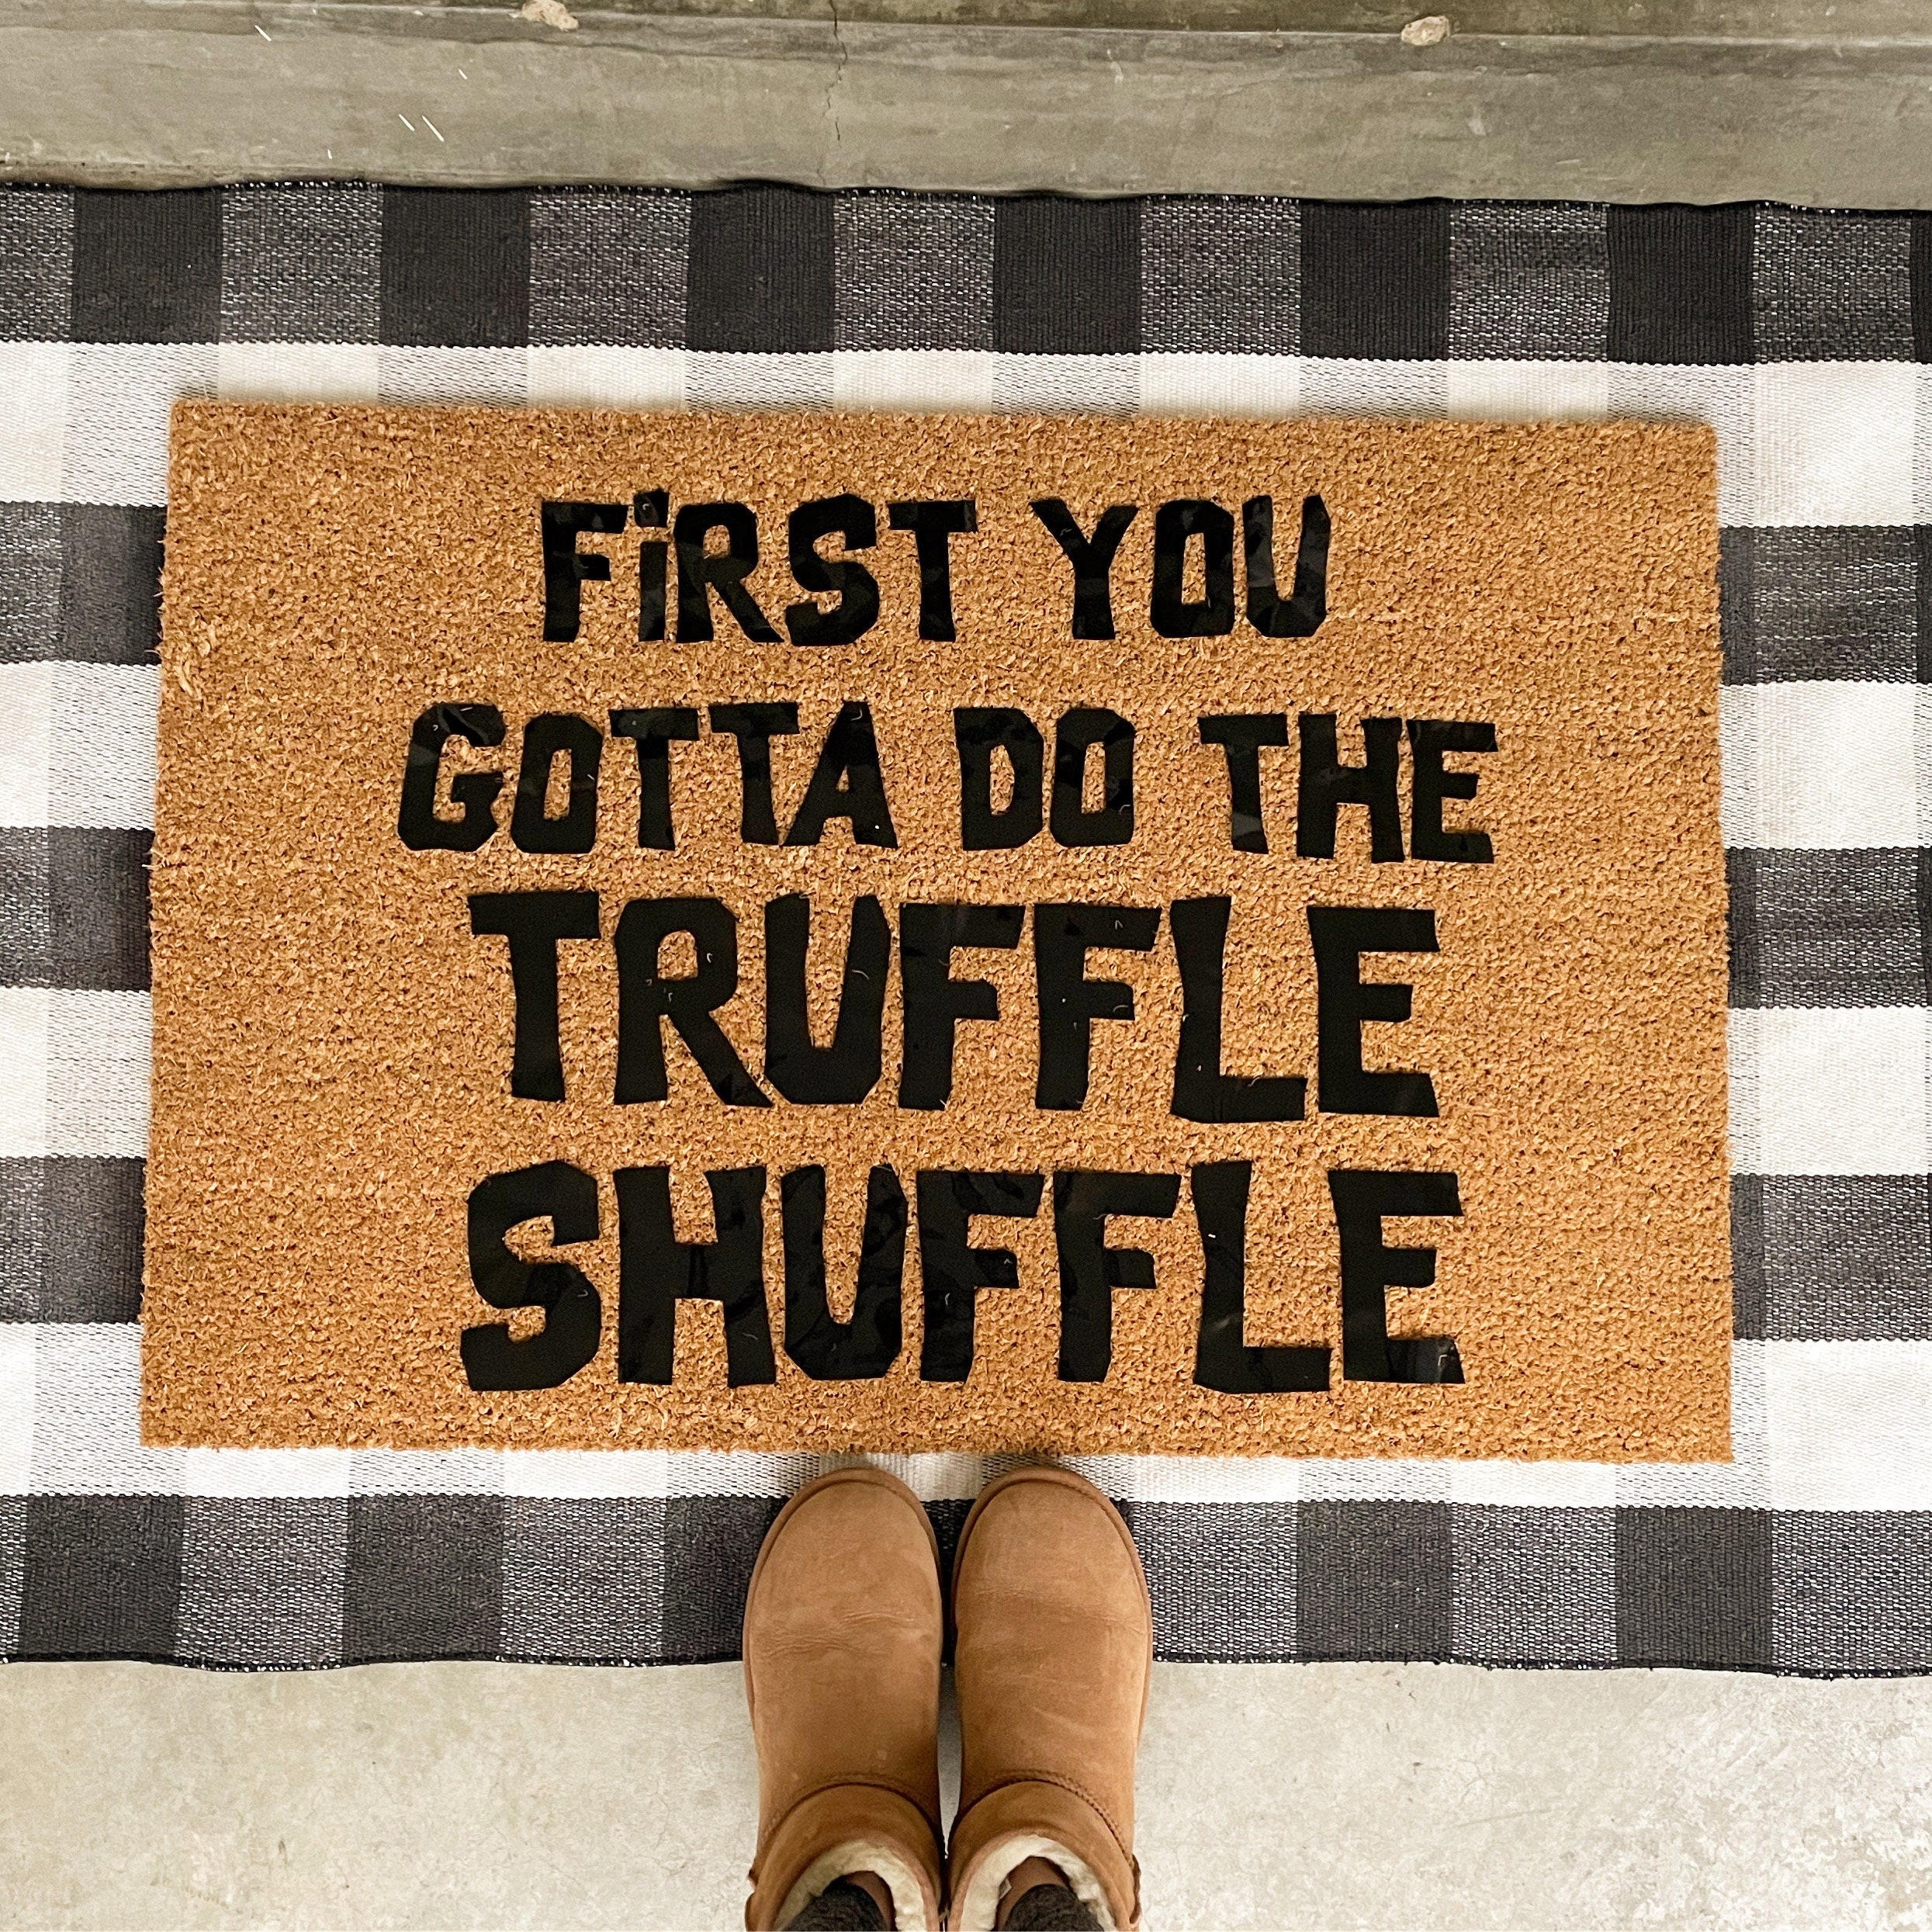 First You Gotta Do The Truffle Shuffle Doormat Non Slip